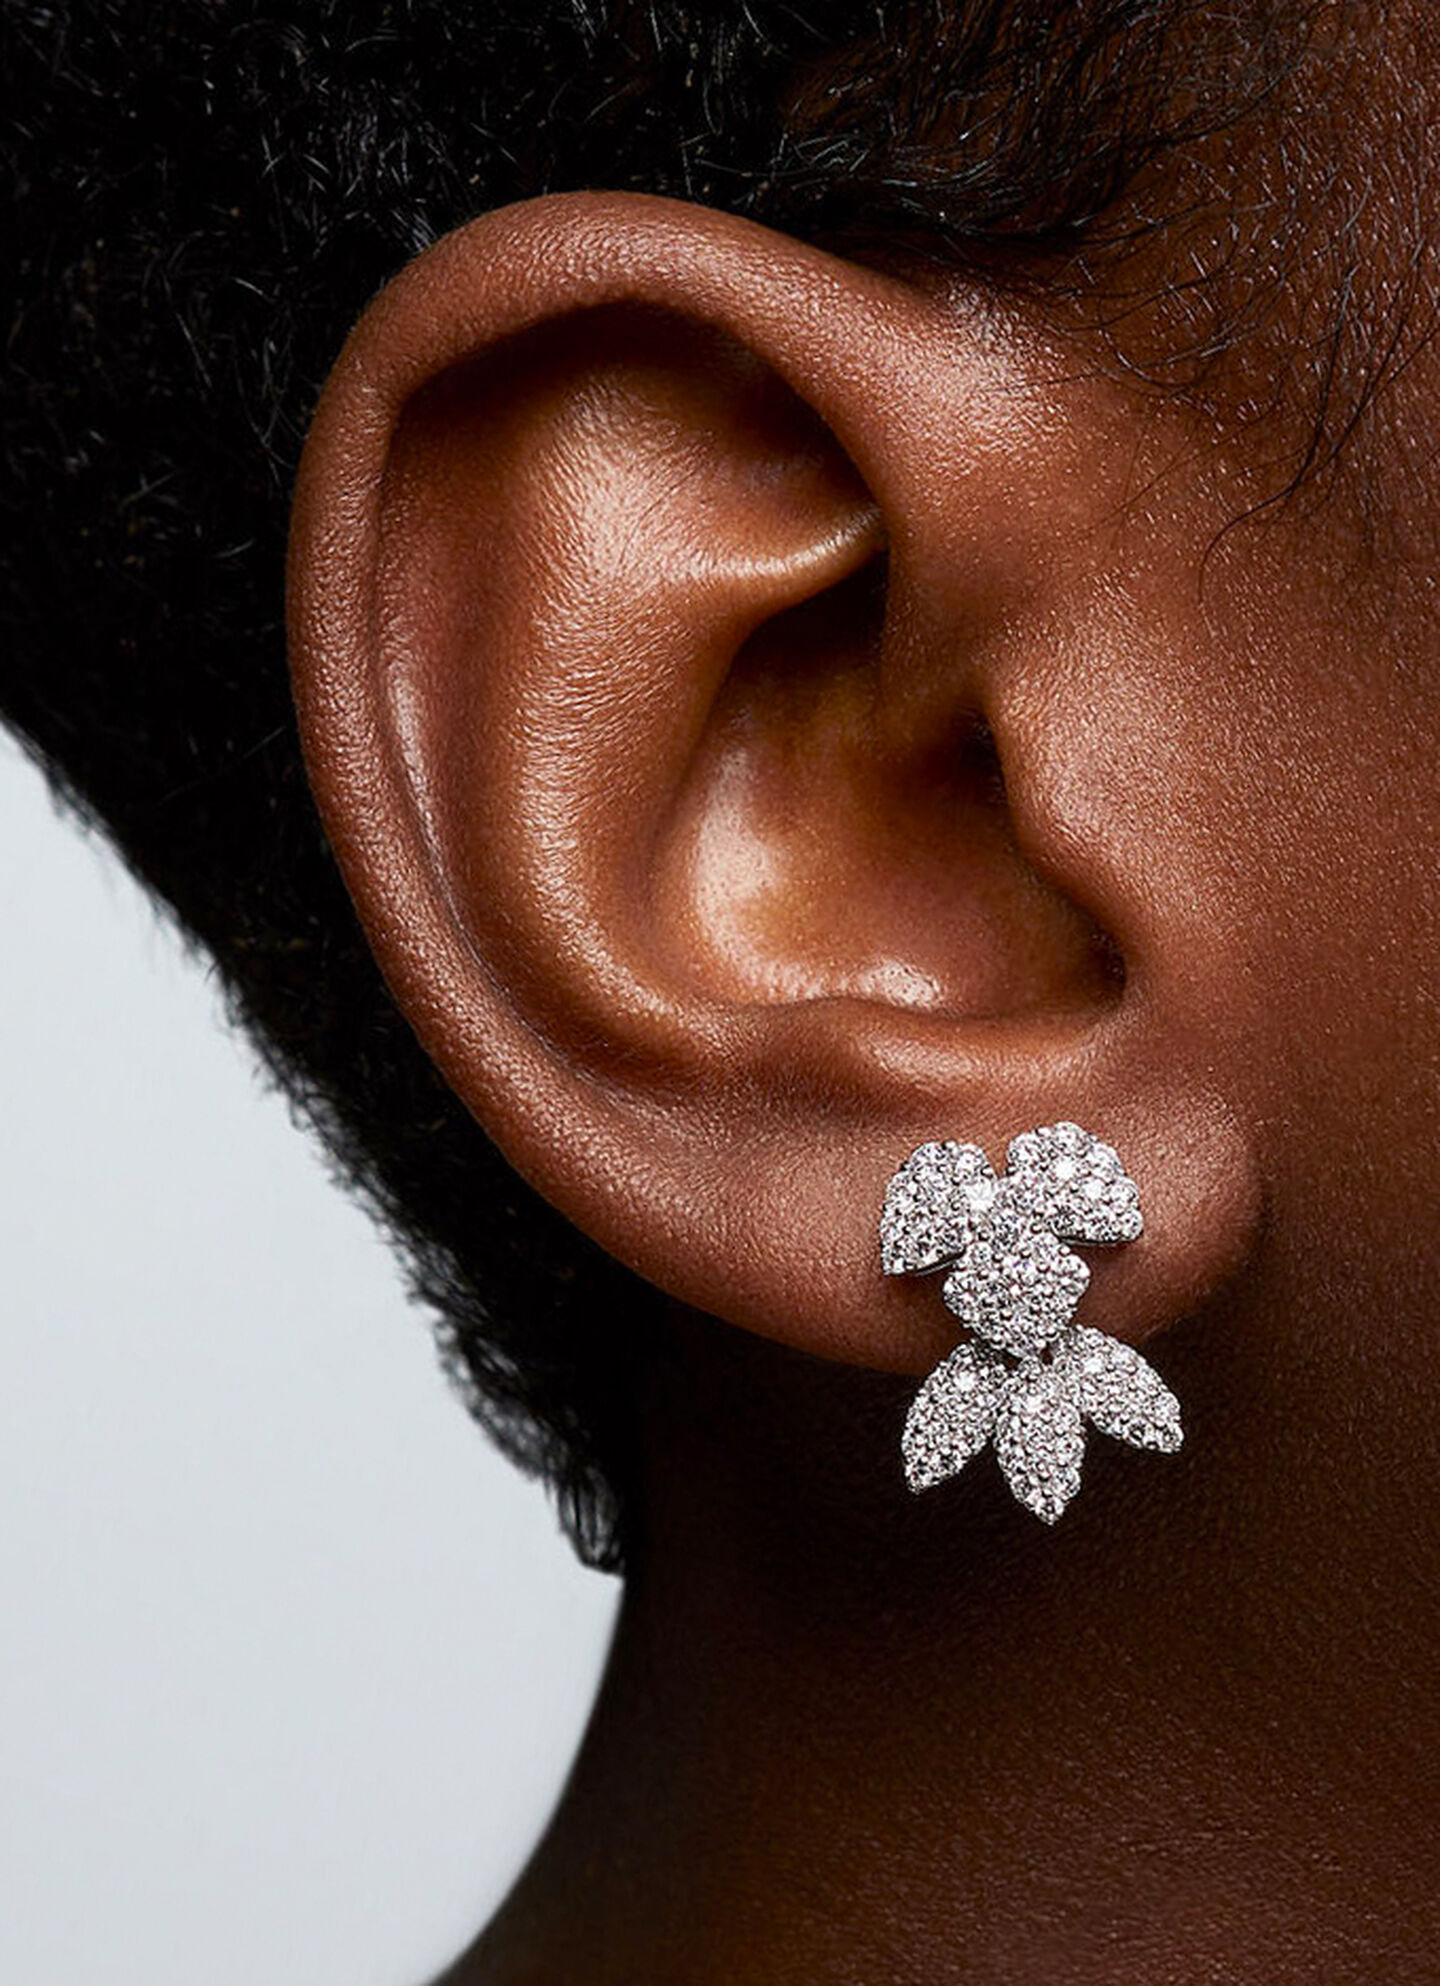 A model wearing Birks Snowflake Snowstorm diamond earrings.